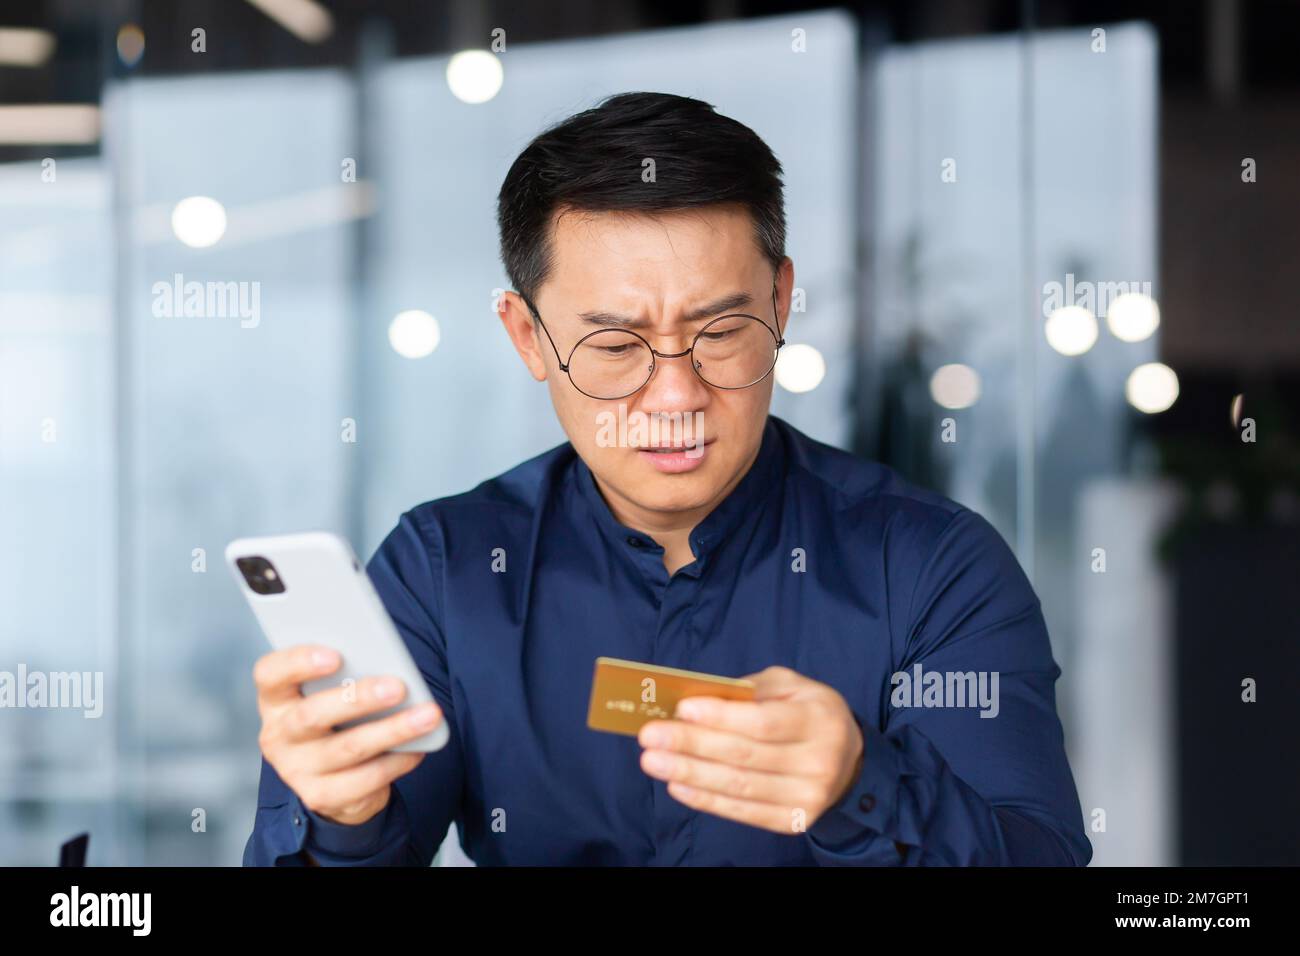 Ein besorgter junger Mann sitzt im Büro und hält eine Kreditkarte und ein Telefon in der Hand. Erfolgloses Online-Shopping, Transaktion, Geldmangel auf dem Konto, gesperrtes Konto. Bankrott. Stockfoto